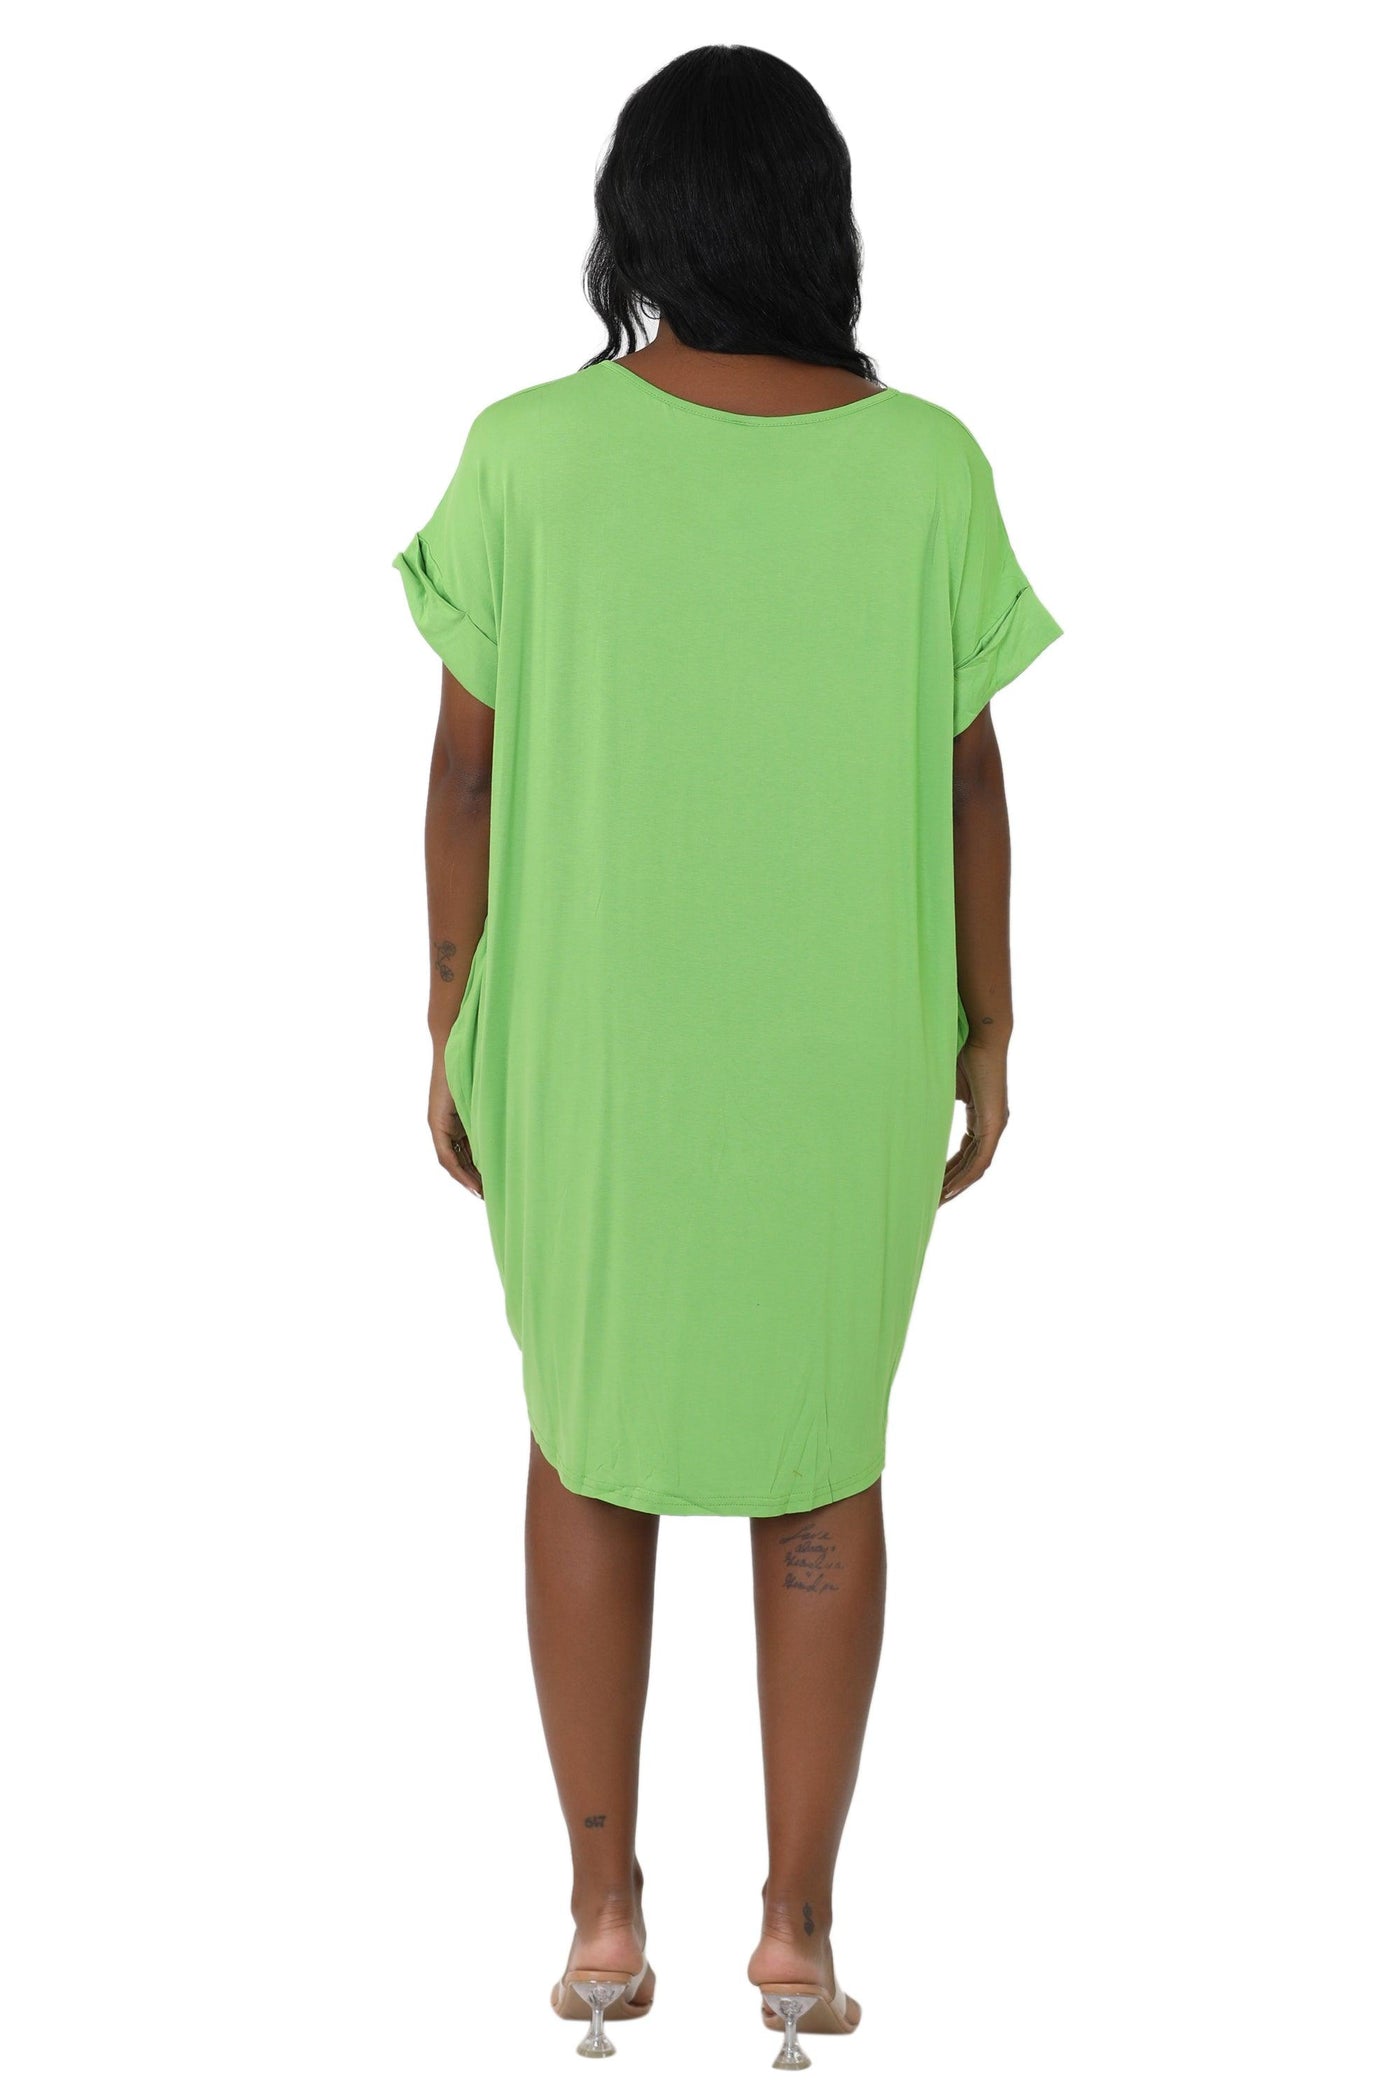 Mid-Length "Faith" Knitted Short Sleeve Dress 5555  - Advance Apparels Inc